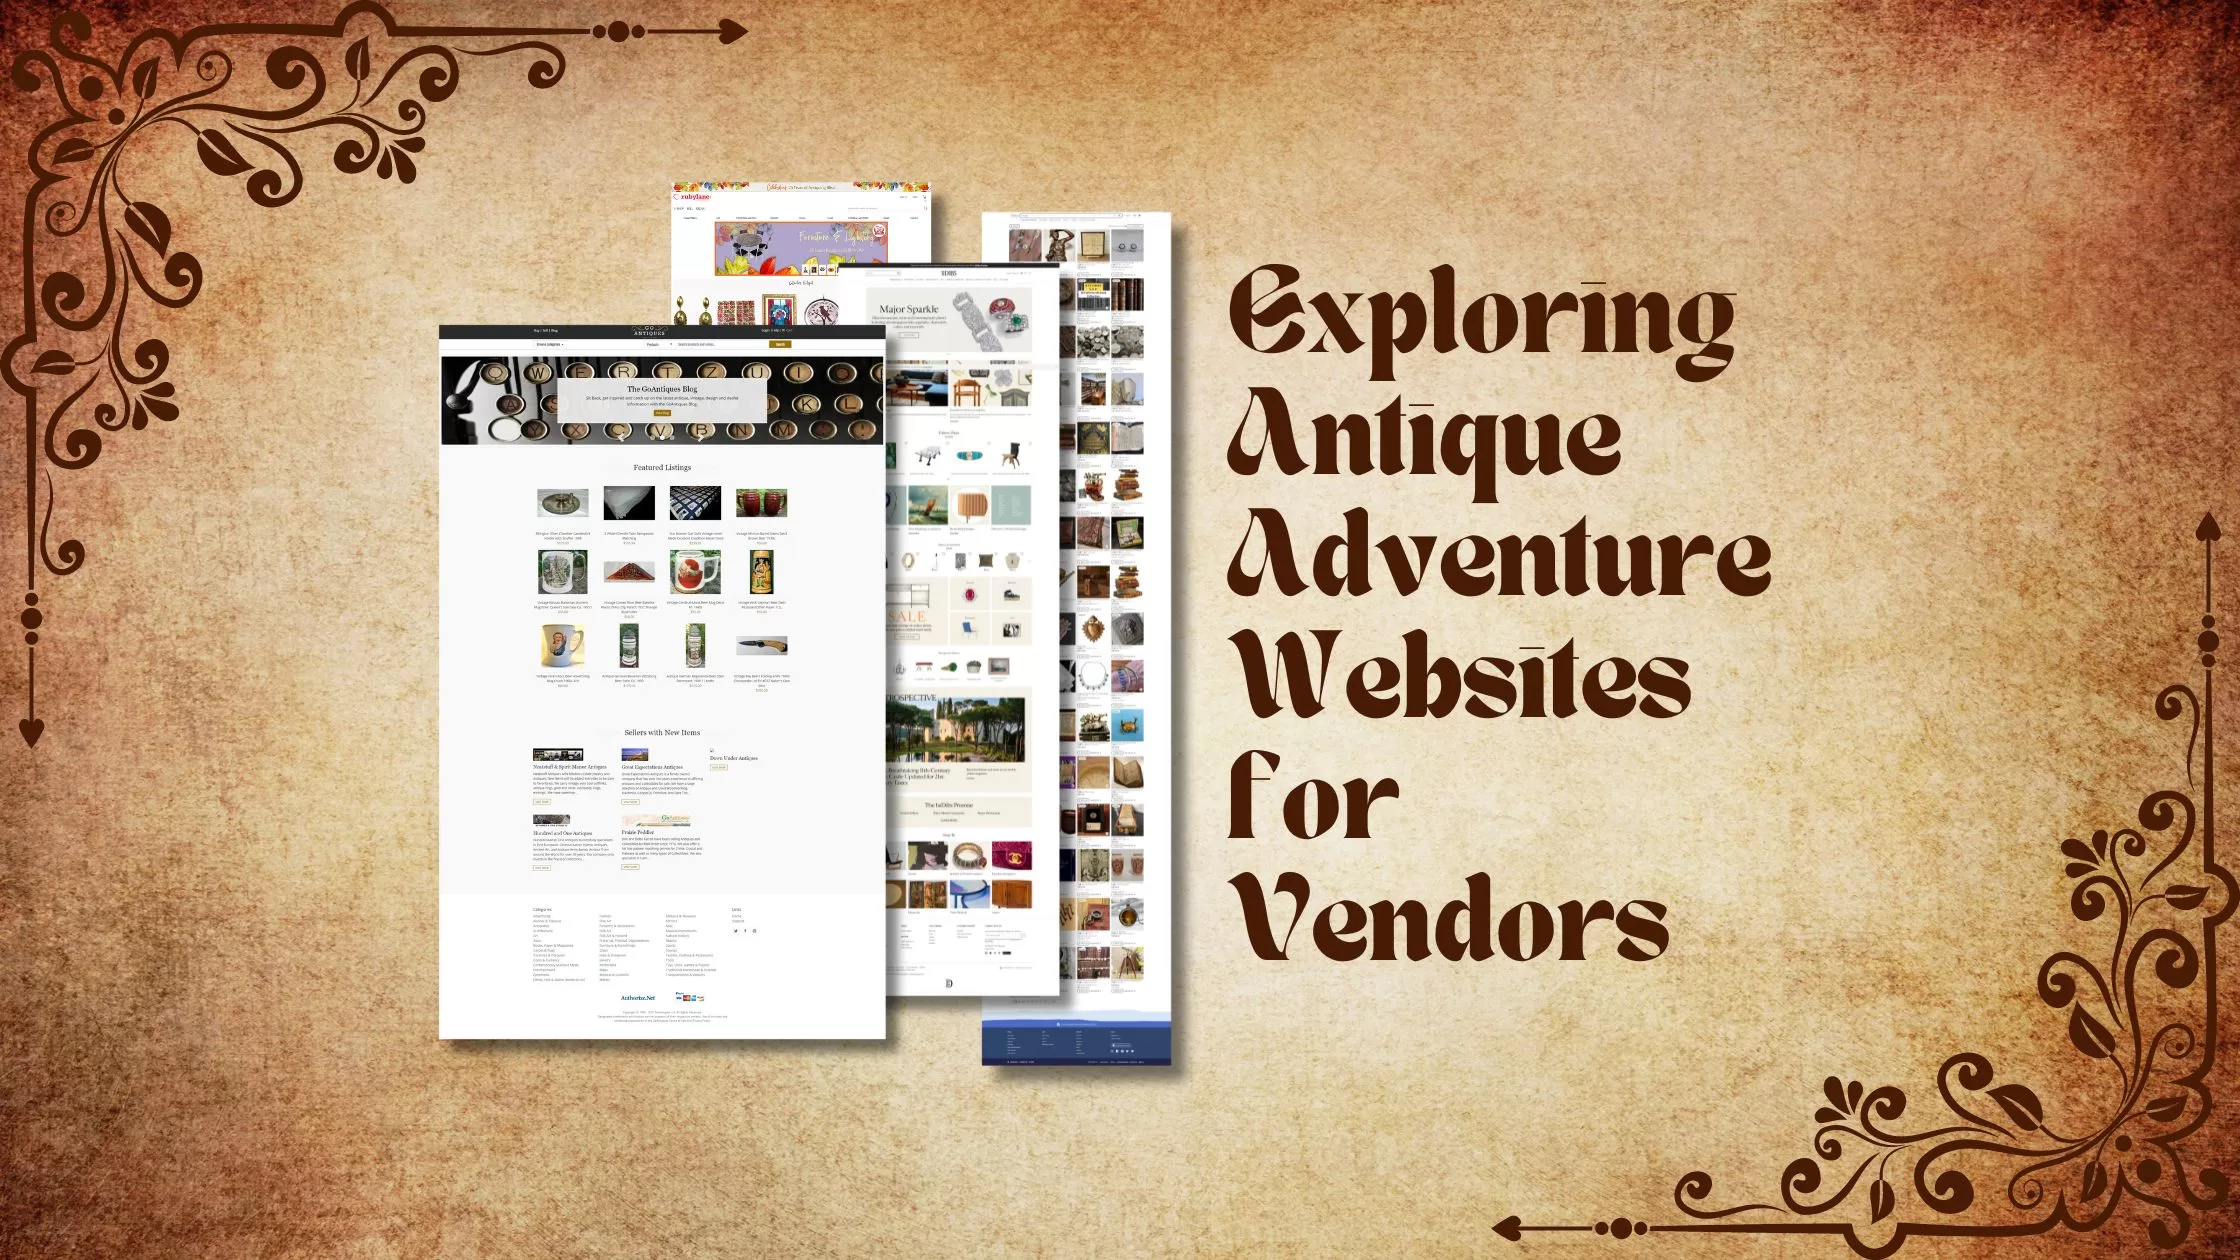 Exploring Antique Adventure Websites for Vendors